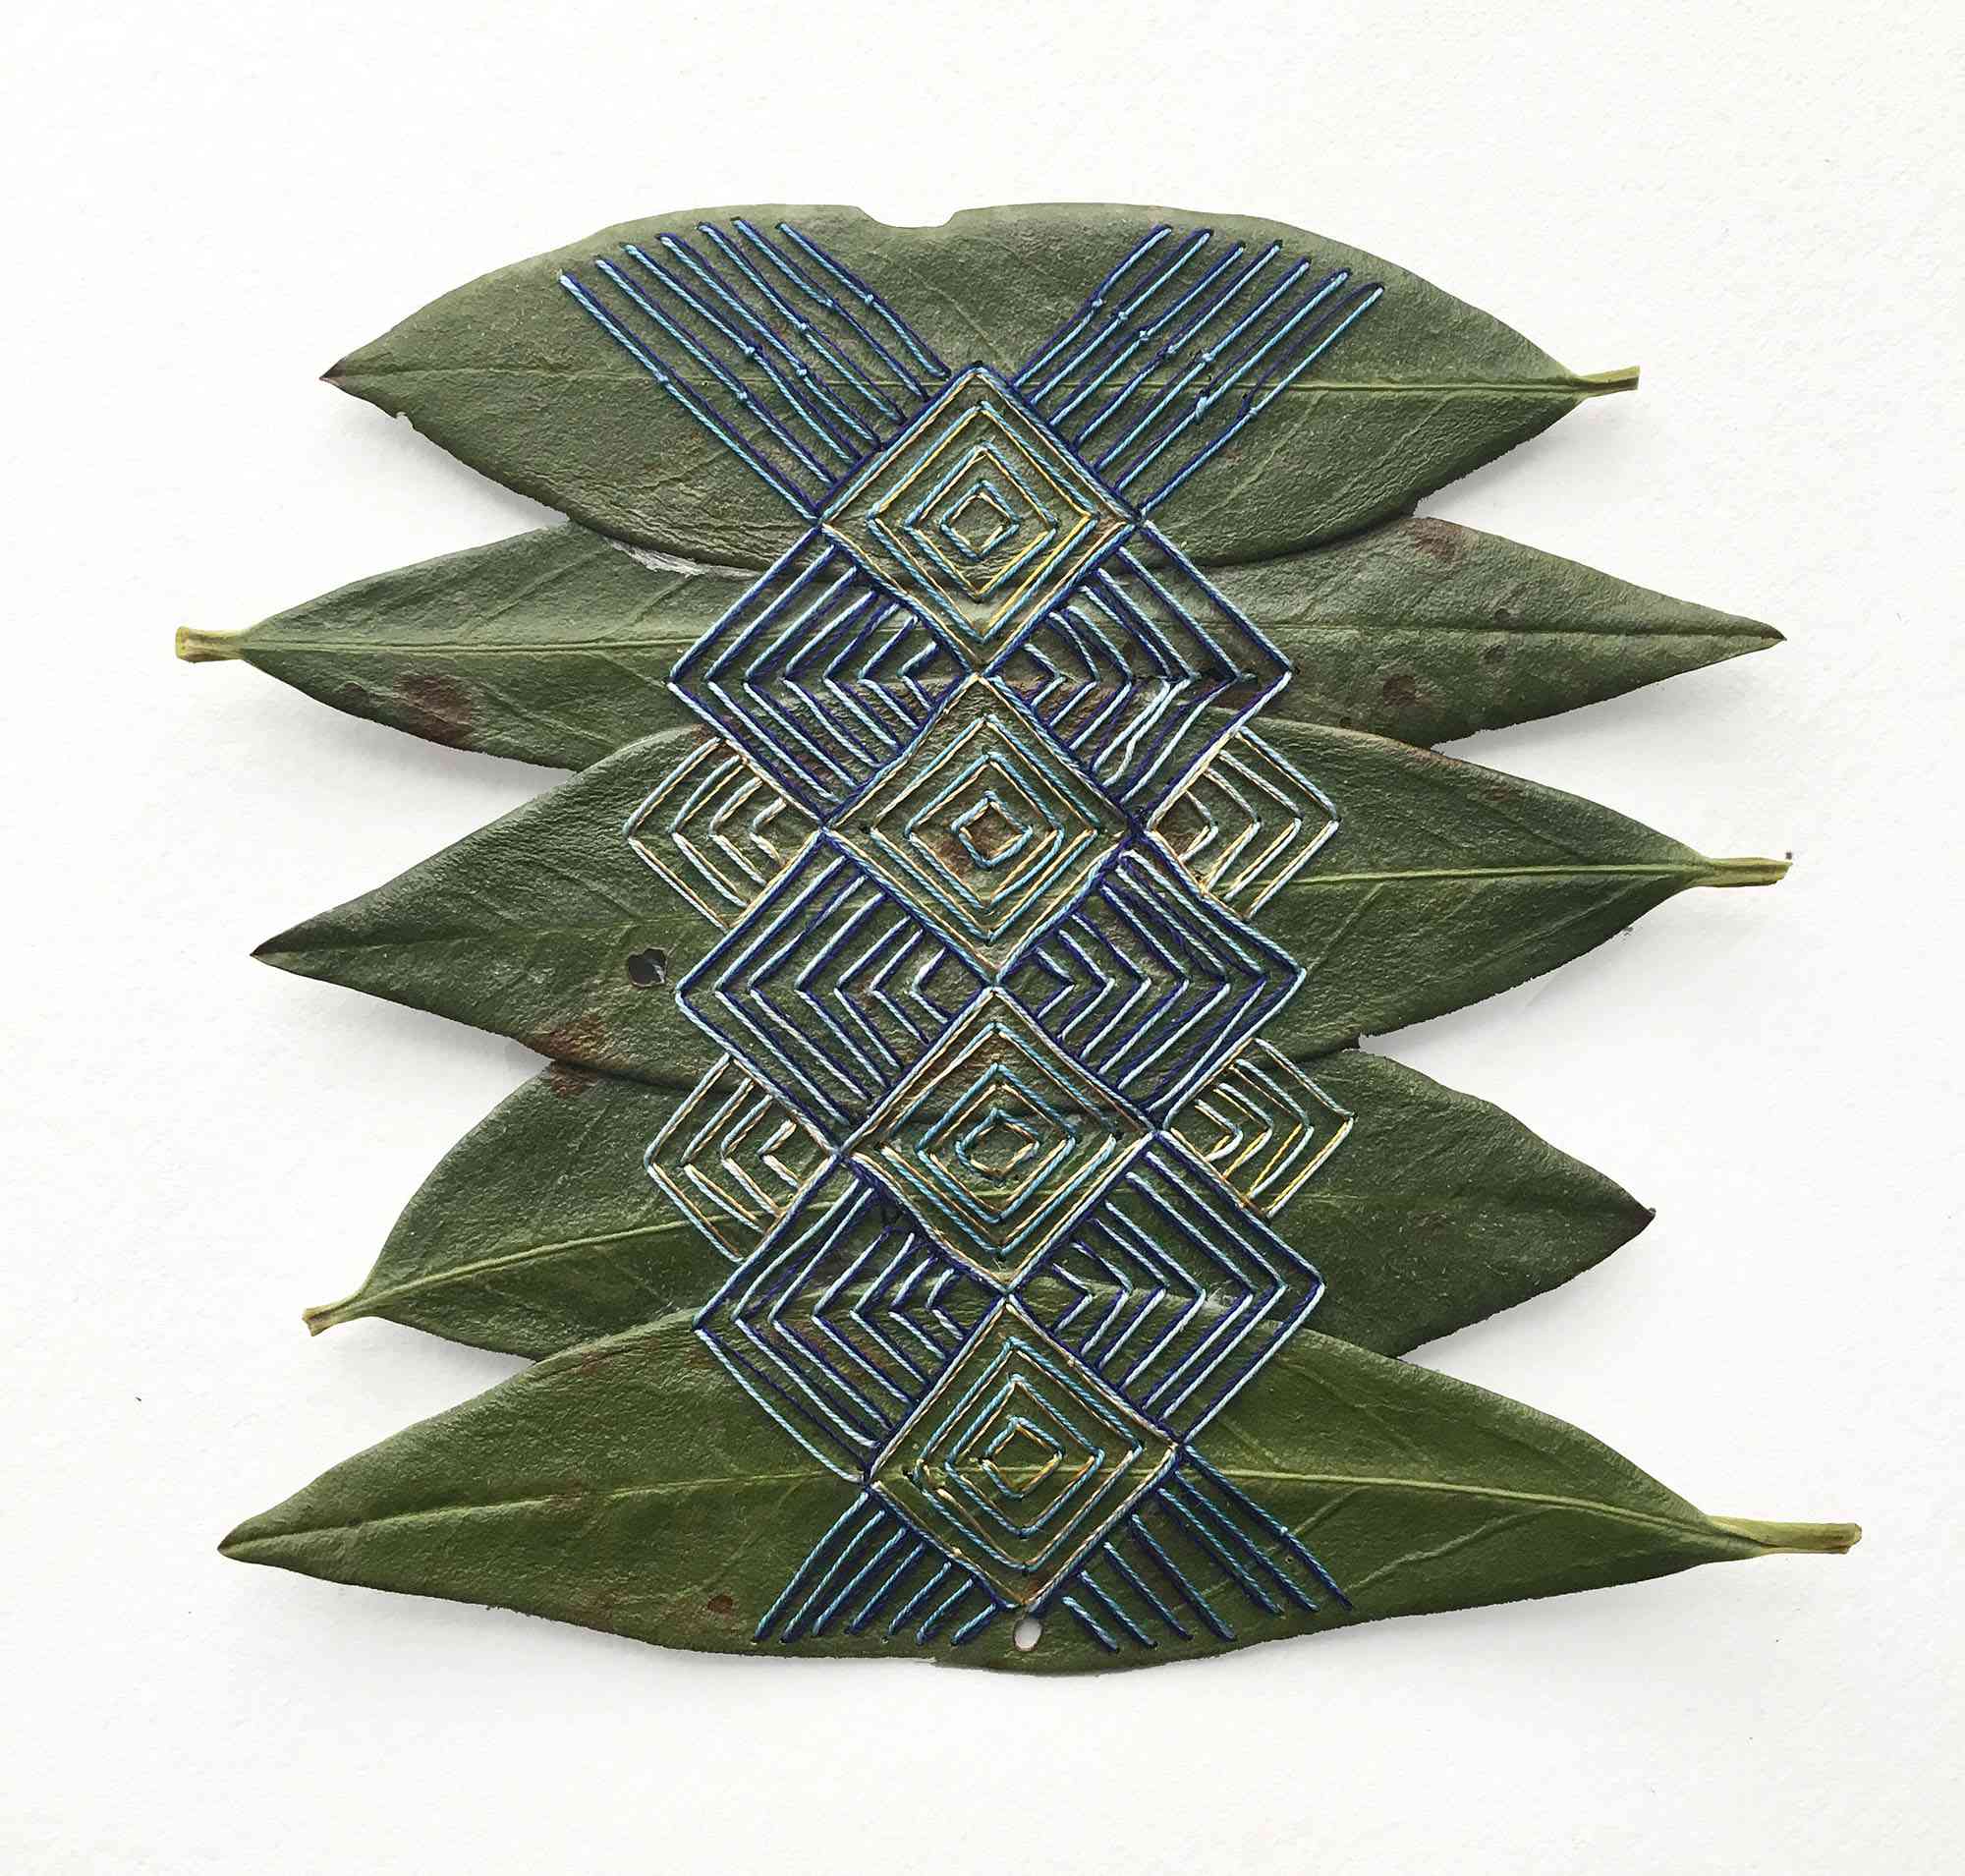 刺绣剪纸叶艺术品希拉里·沃特斯·法伊尔